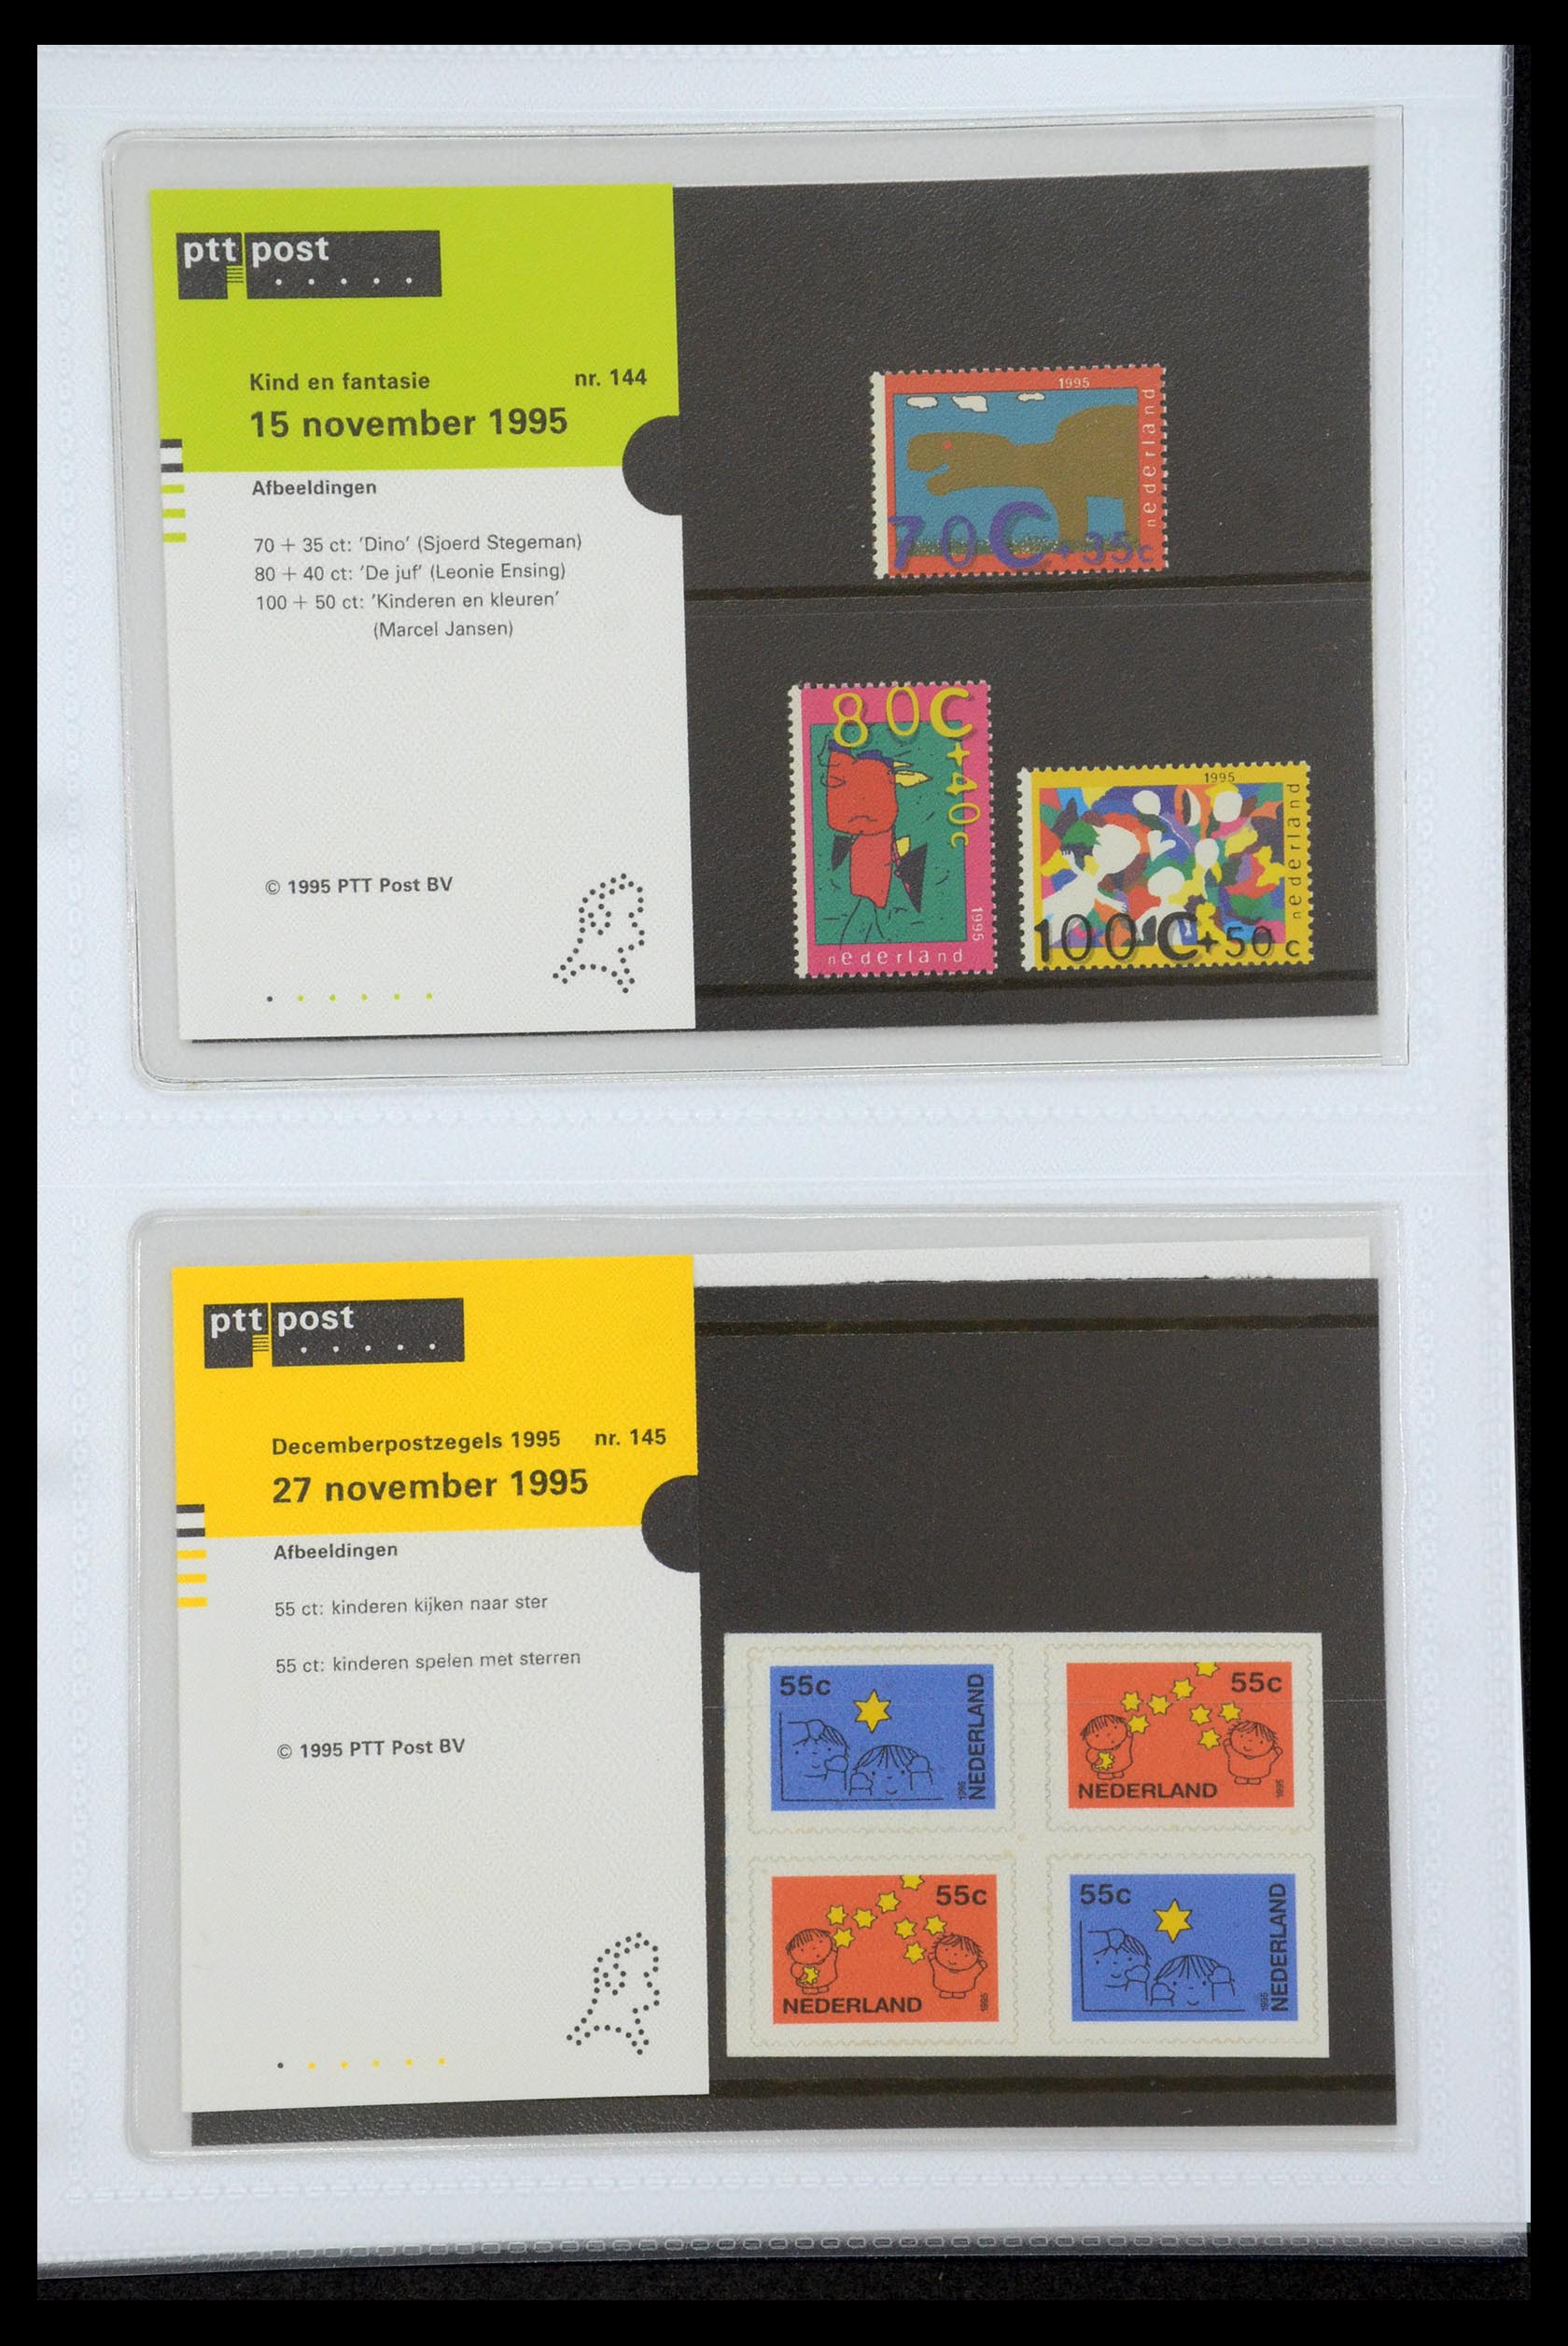 35947 075 - Stamp Collection 35947 Netherlands PTT presentation packs 1982-2019!